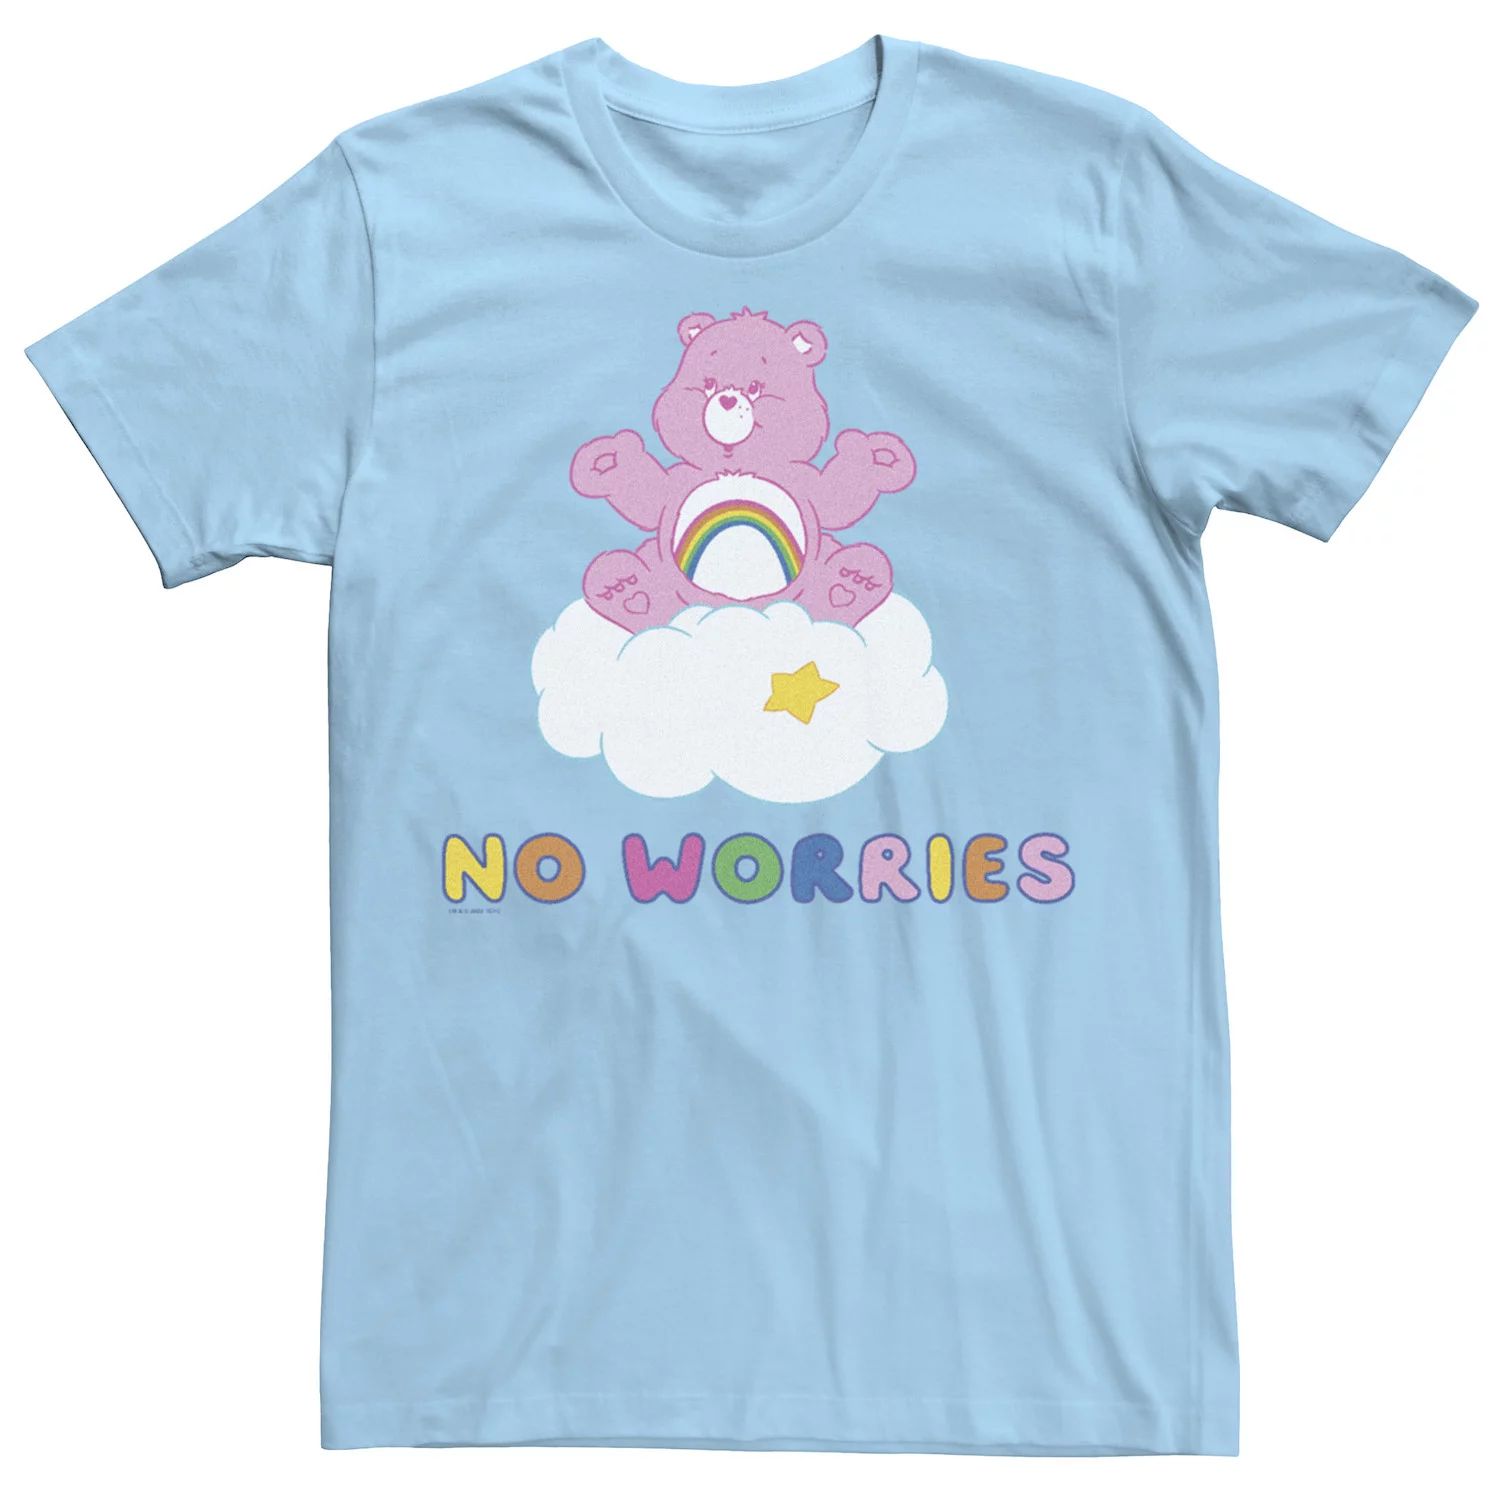 Мужская футболка Care Bears Не беспокойтесь с футболкой Cheer Bear Licensed Character